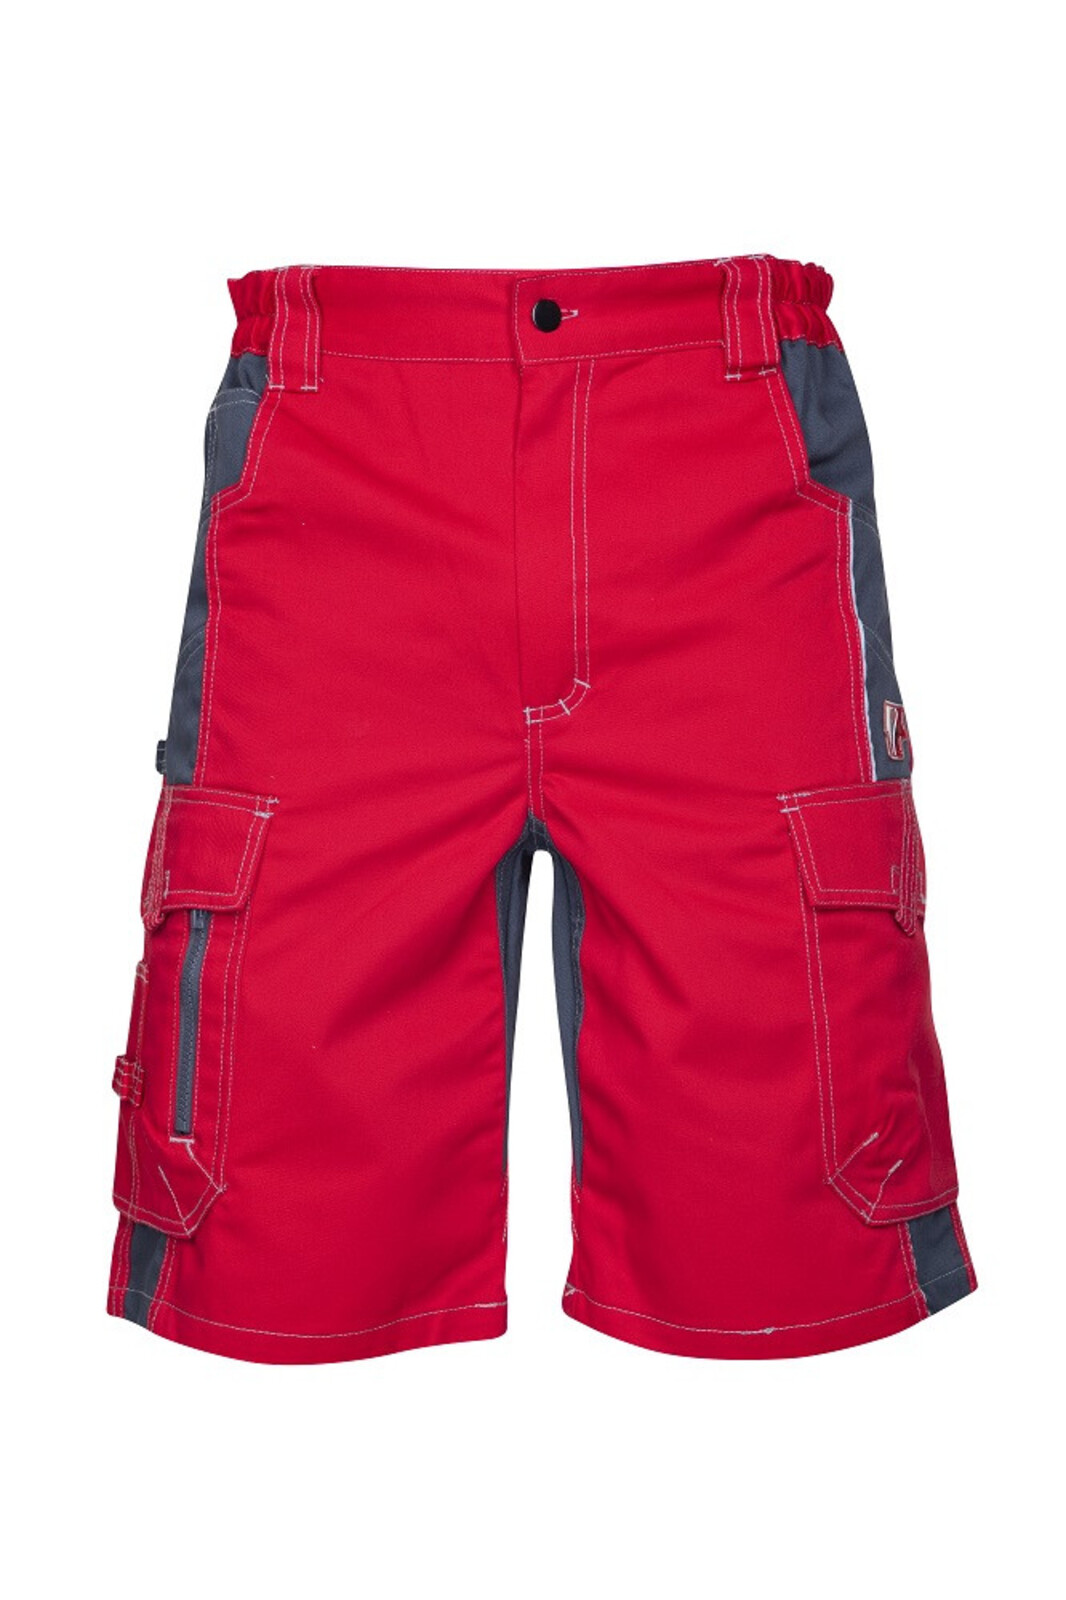 Pánske montérkové šortky Ardon Vision - veľkosť: 52, farba: červená/sivá